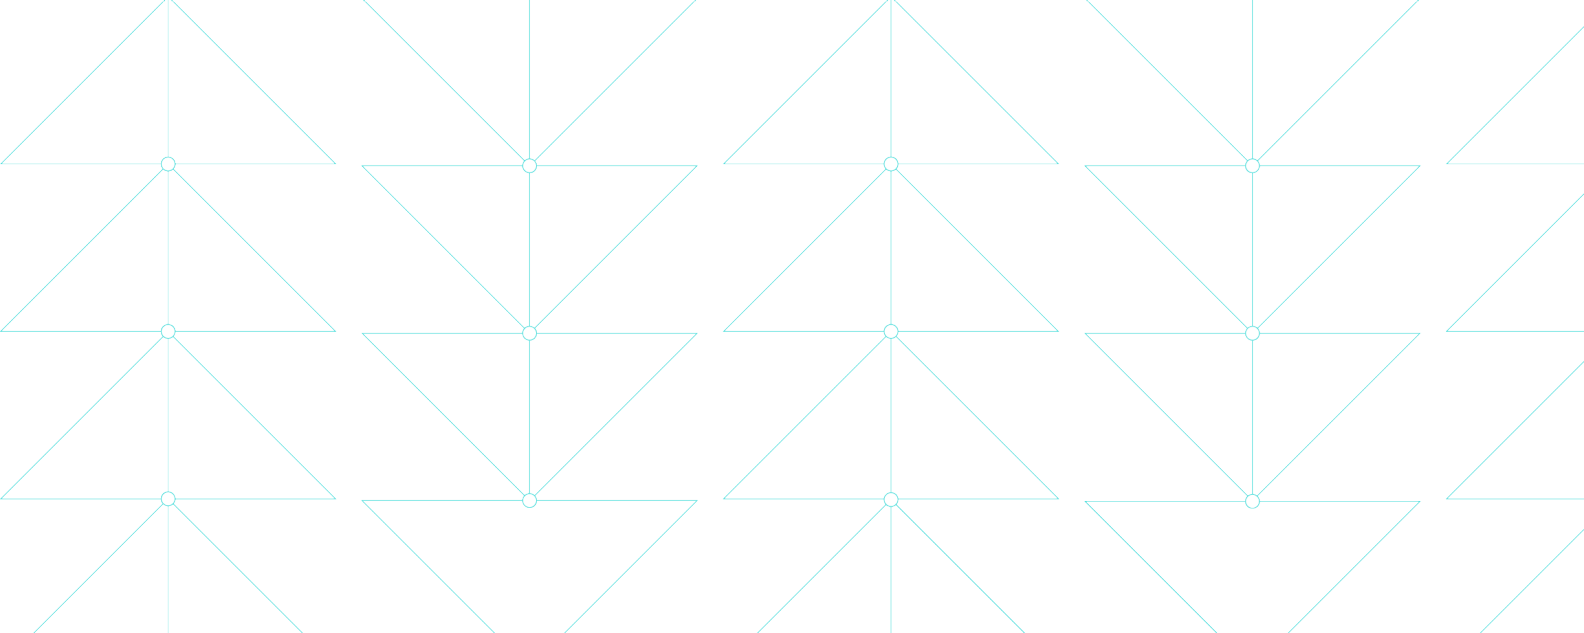 Ilustración que muestra finas líneas azules que forman delicados patrones triangulares